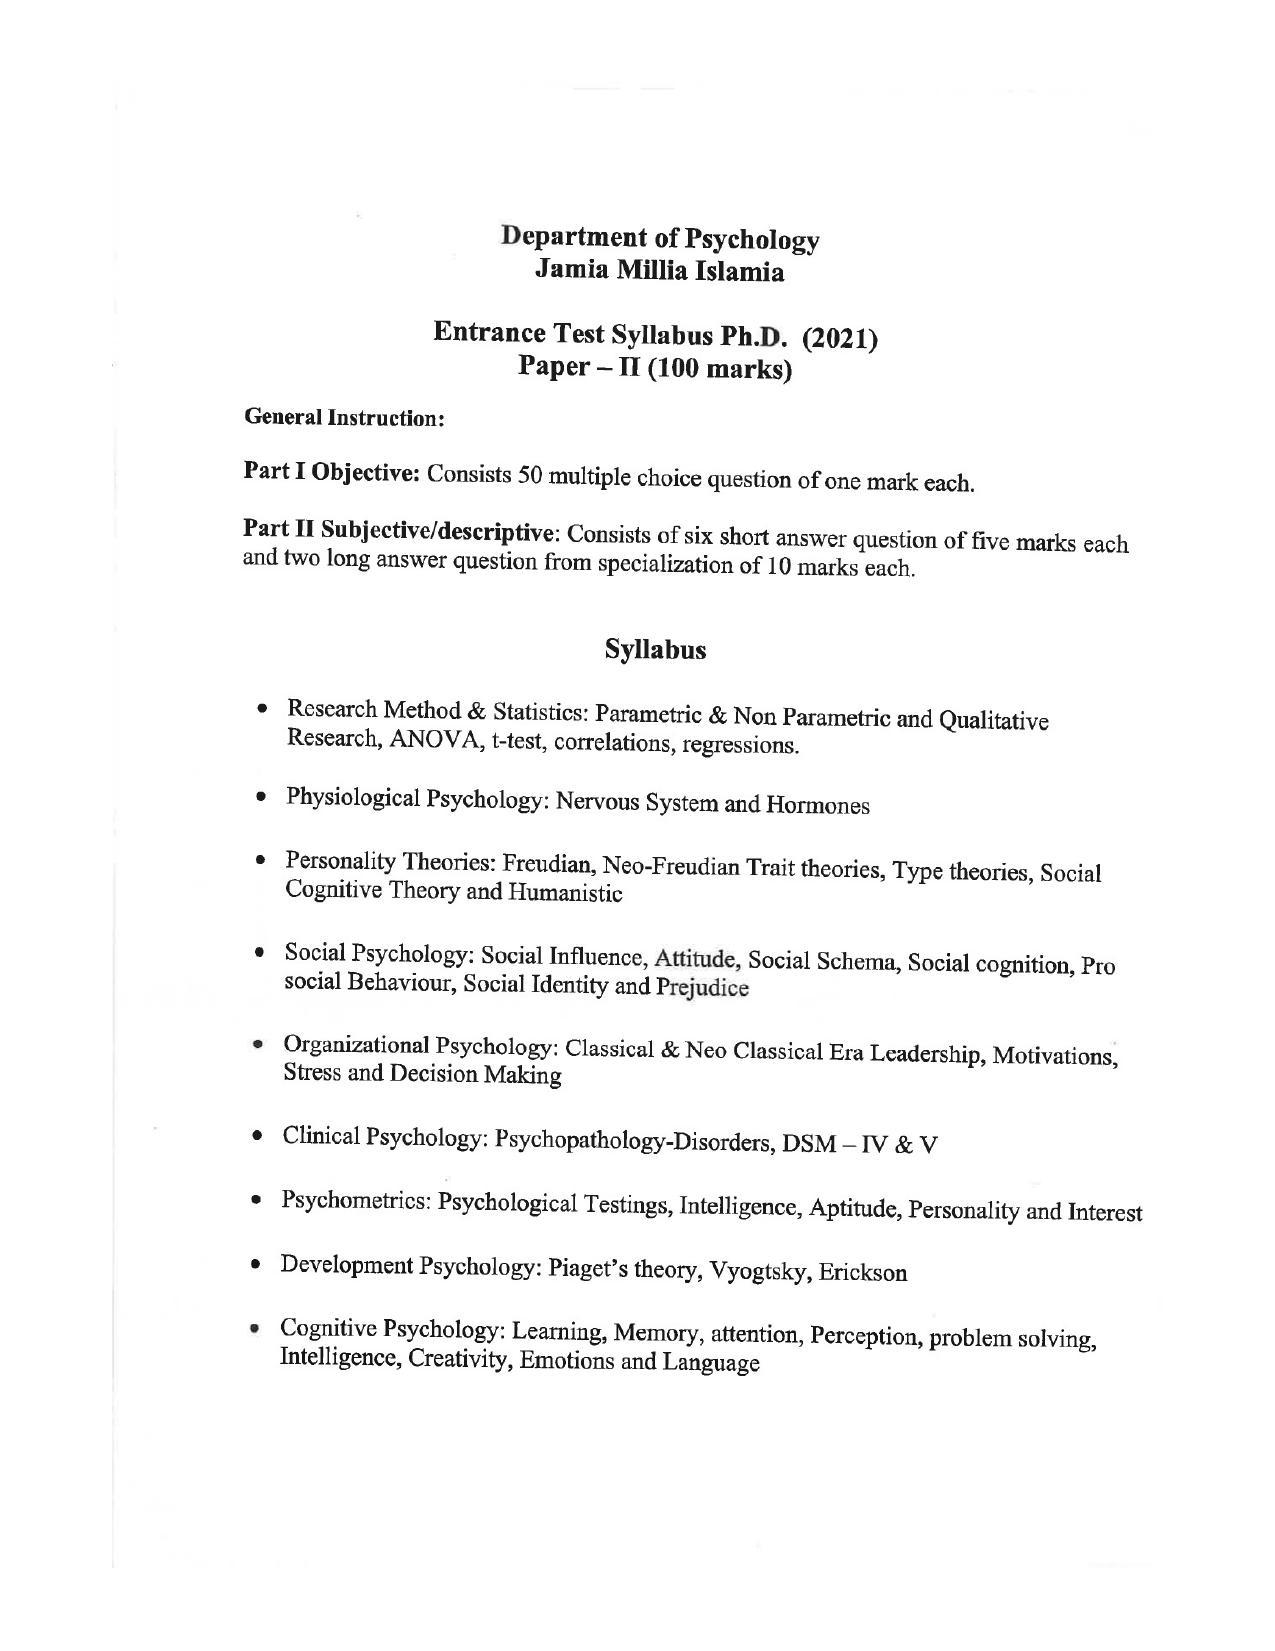 JMI Entrance Exam FACULTY OF SOCIAL SCIENCES Syllabus - Page 18